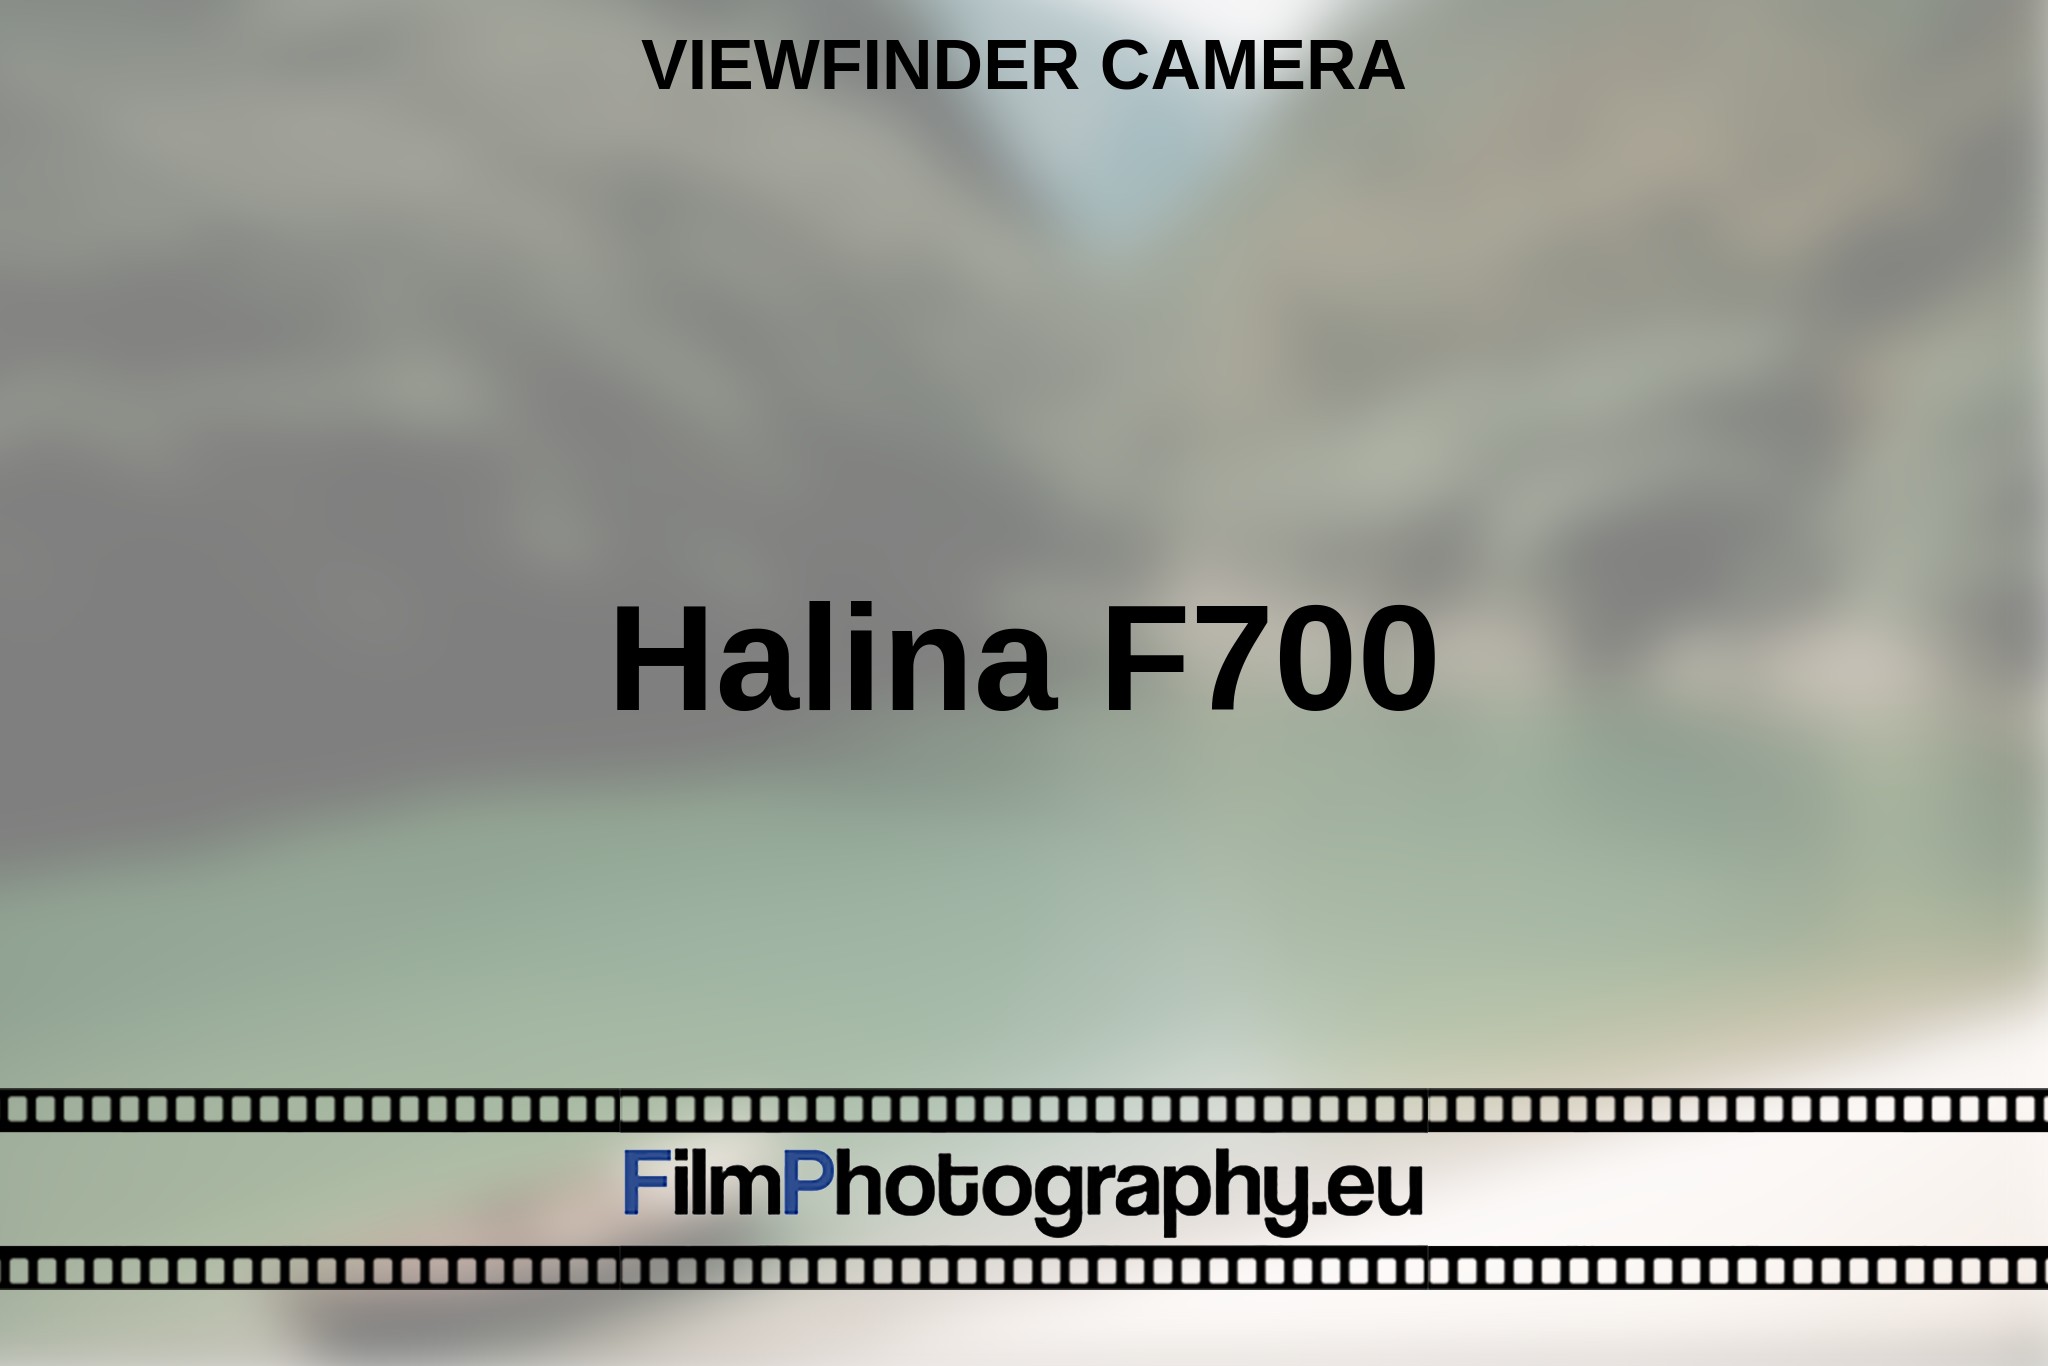 halina-f700-viewfinder-camera-en-bnv.jpg